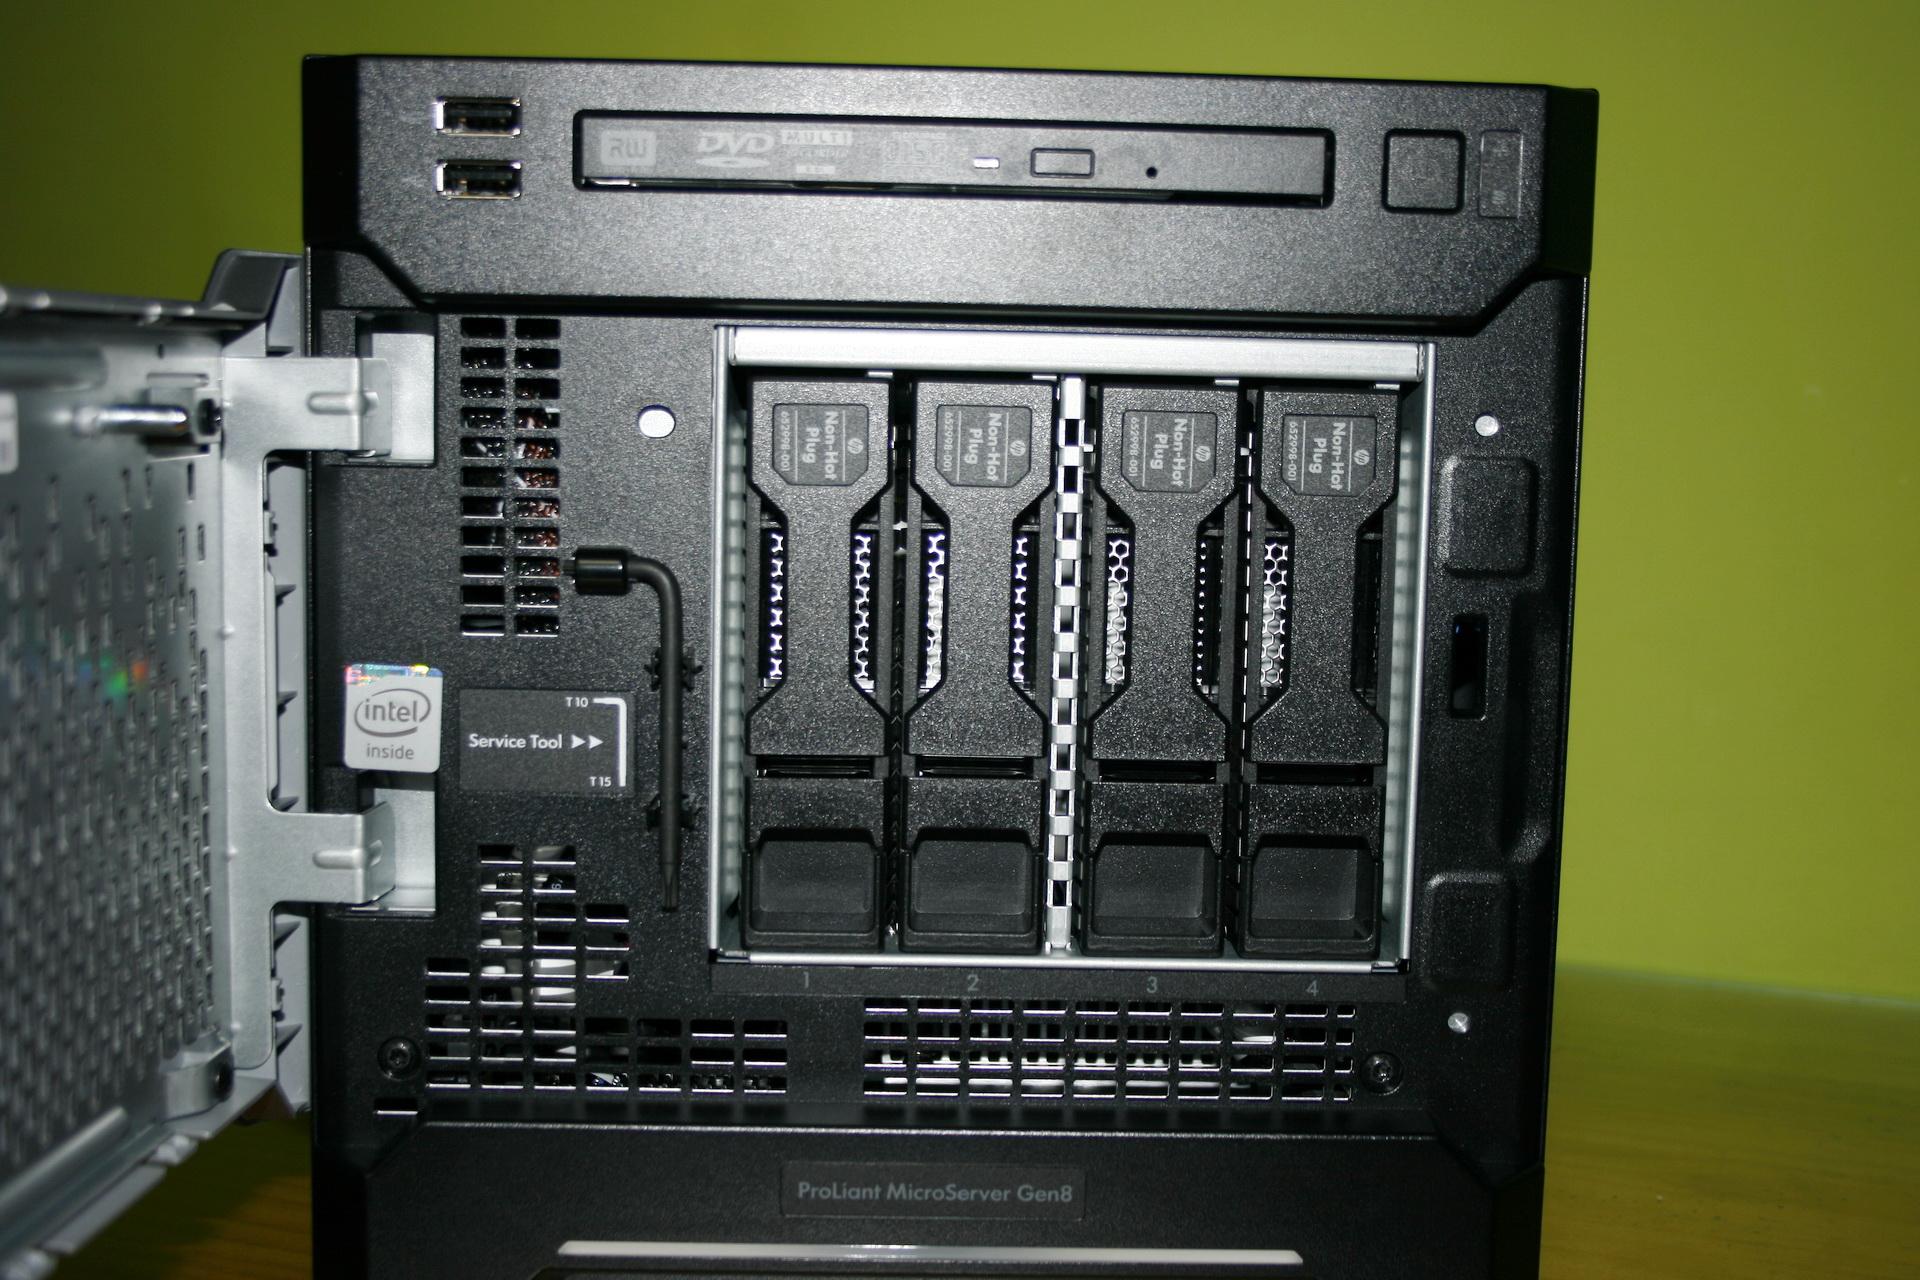 Vista frontal de las bahías para HDD del HP ProLiant MicroServer Gen8